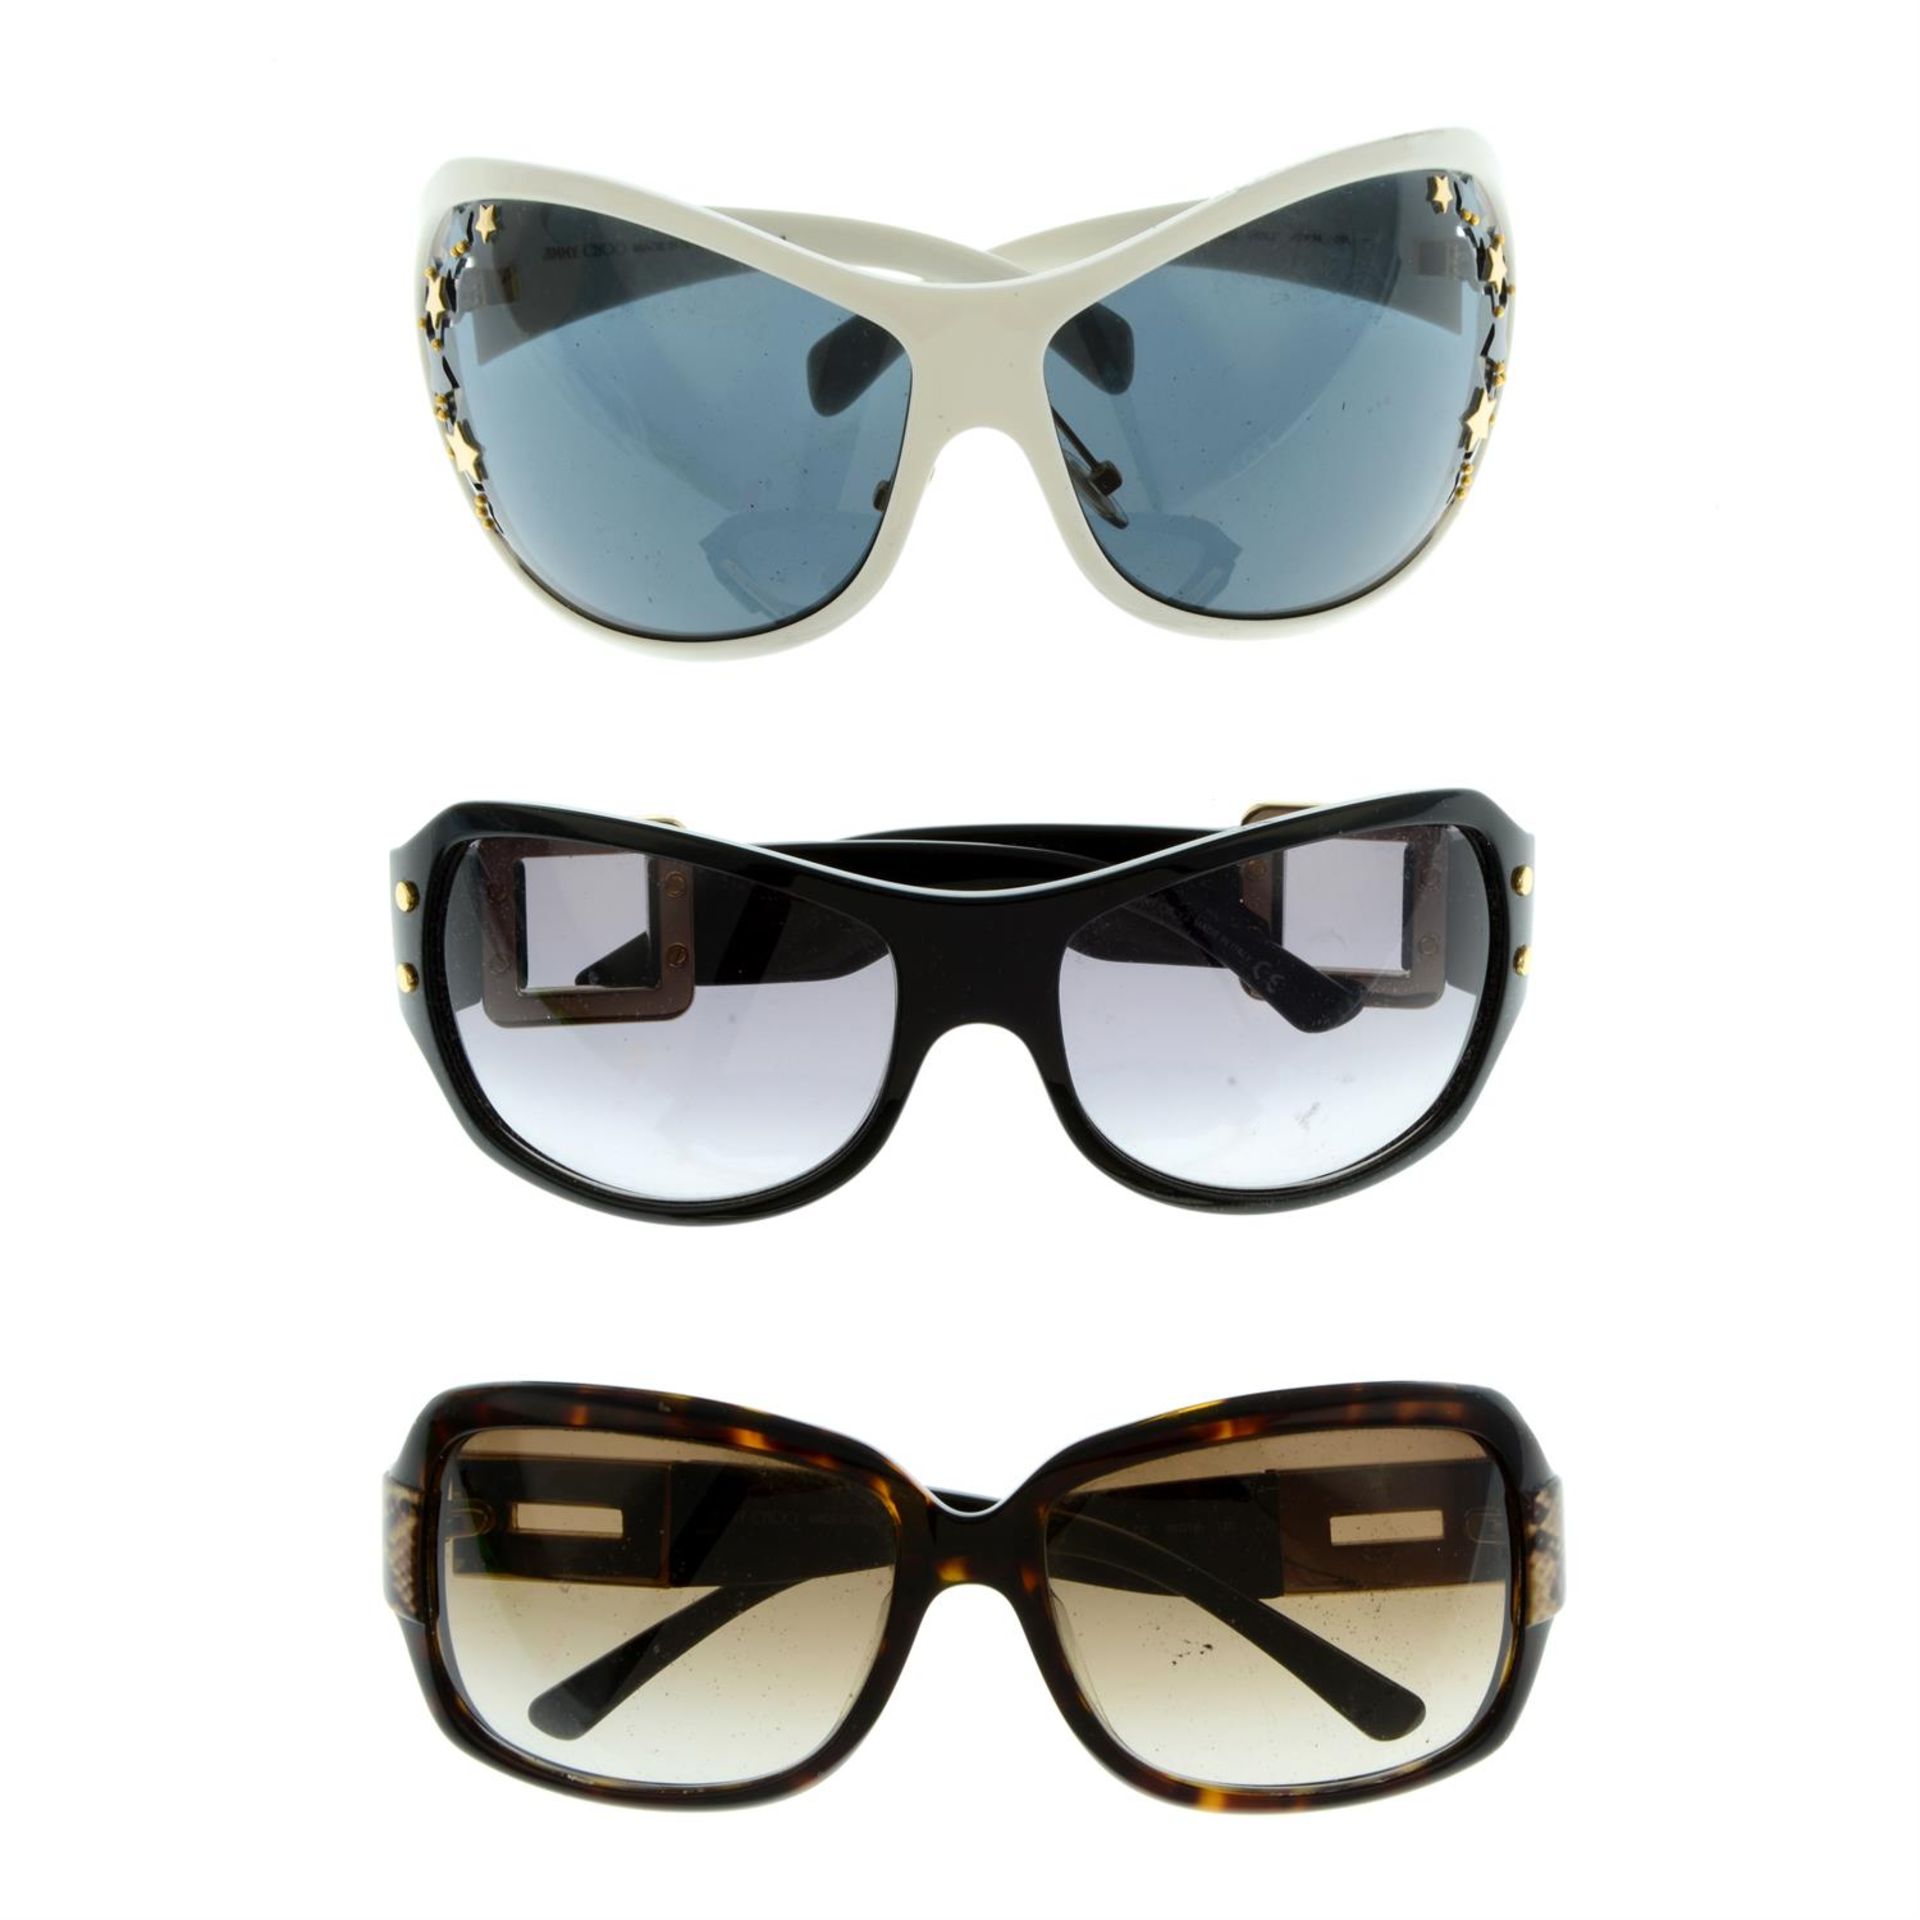 JIMMY CHOO - three pairs of sunglasses.